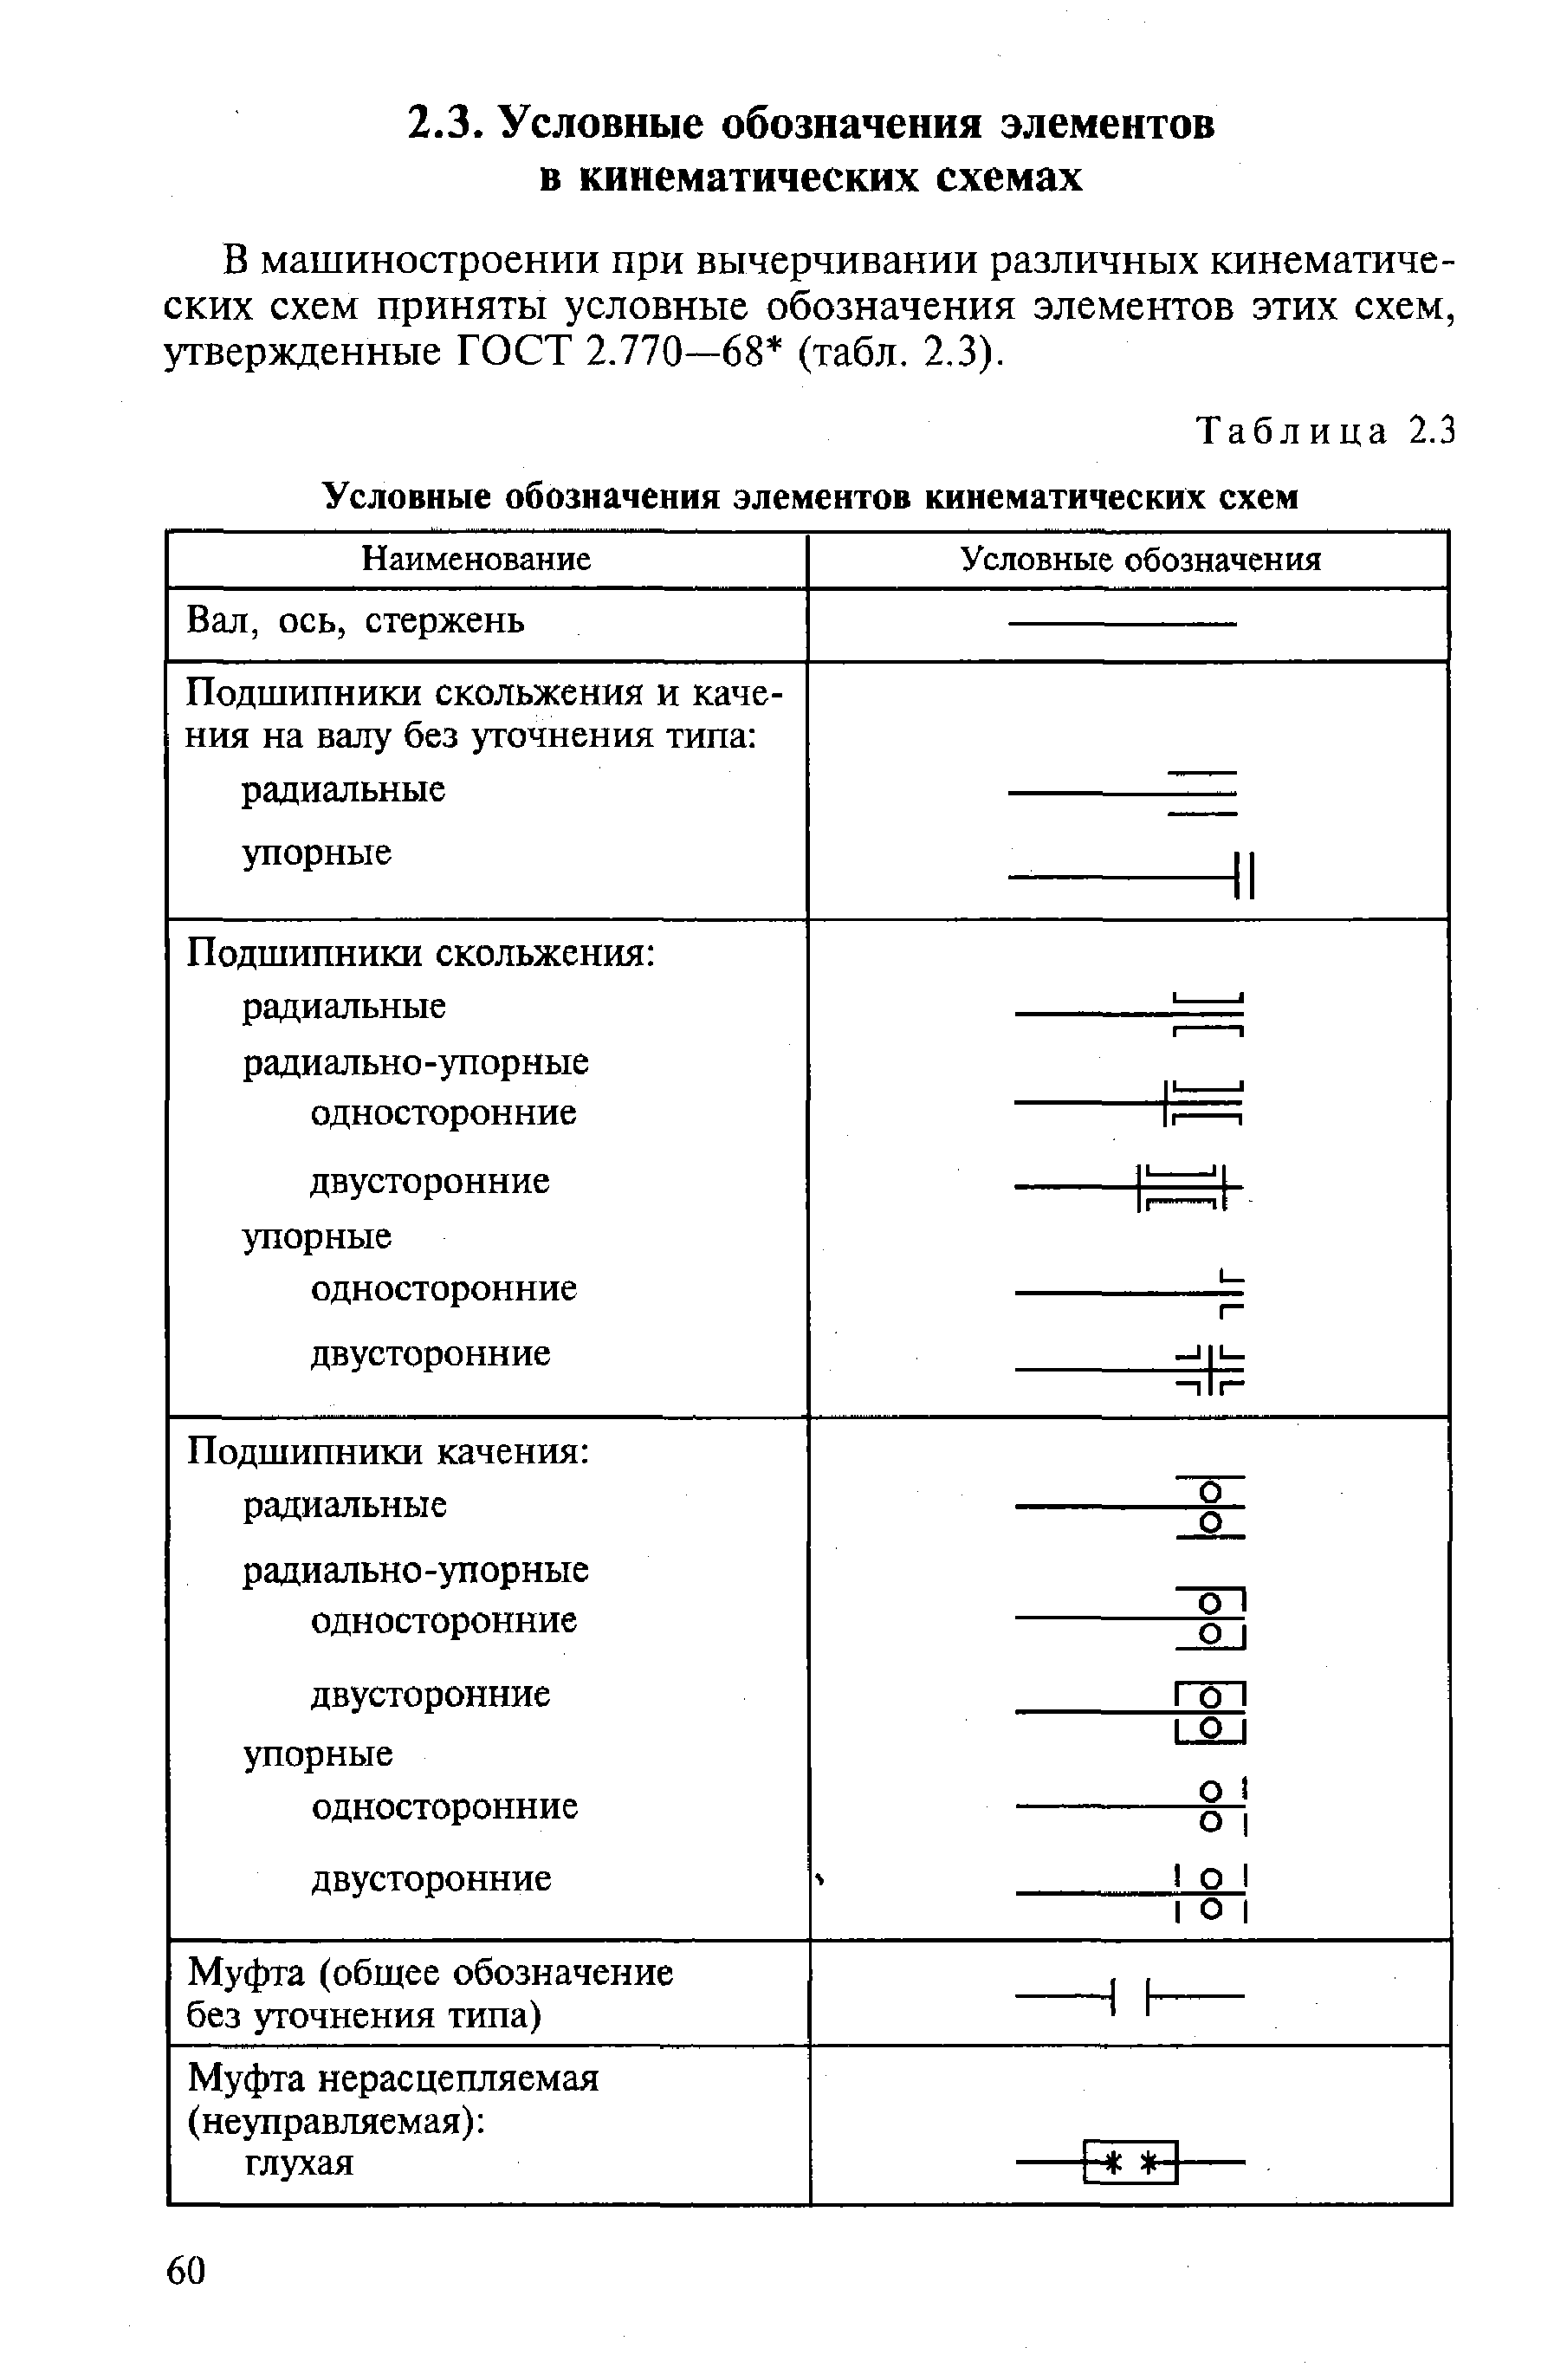 В машиностроении при вычерчивании различных кинематических схем приняты условные обозначения элементов этих схем, утвержденные ГОСТ 2.770—68 (табл. 2.3).
